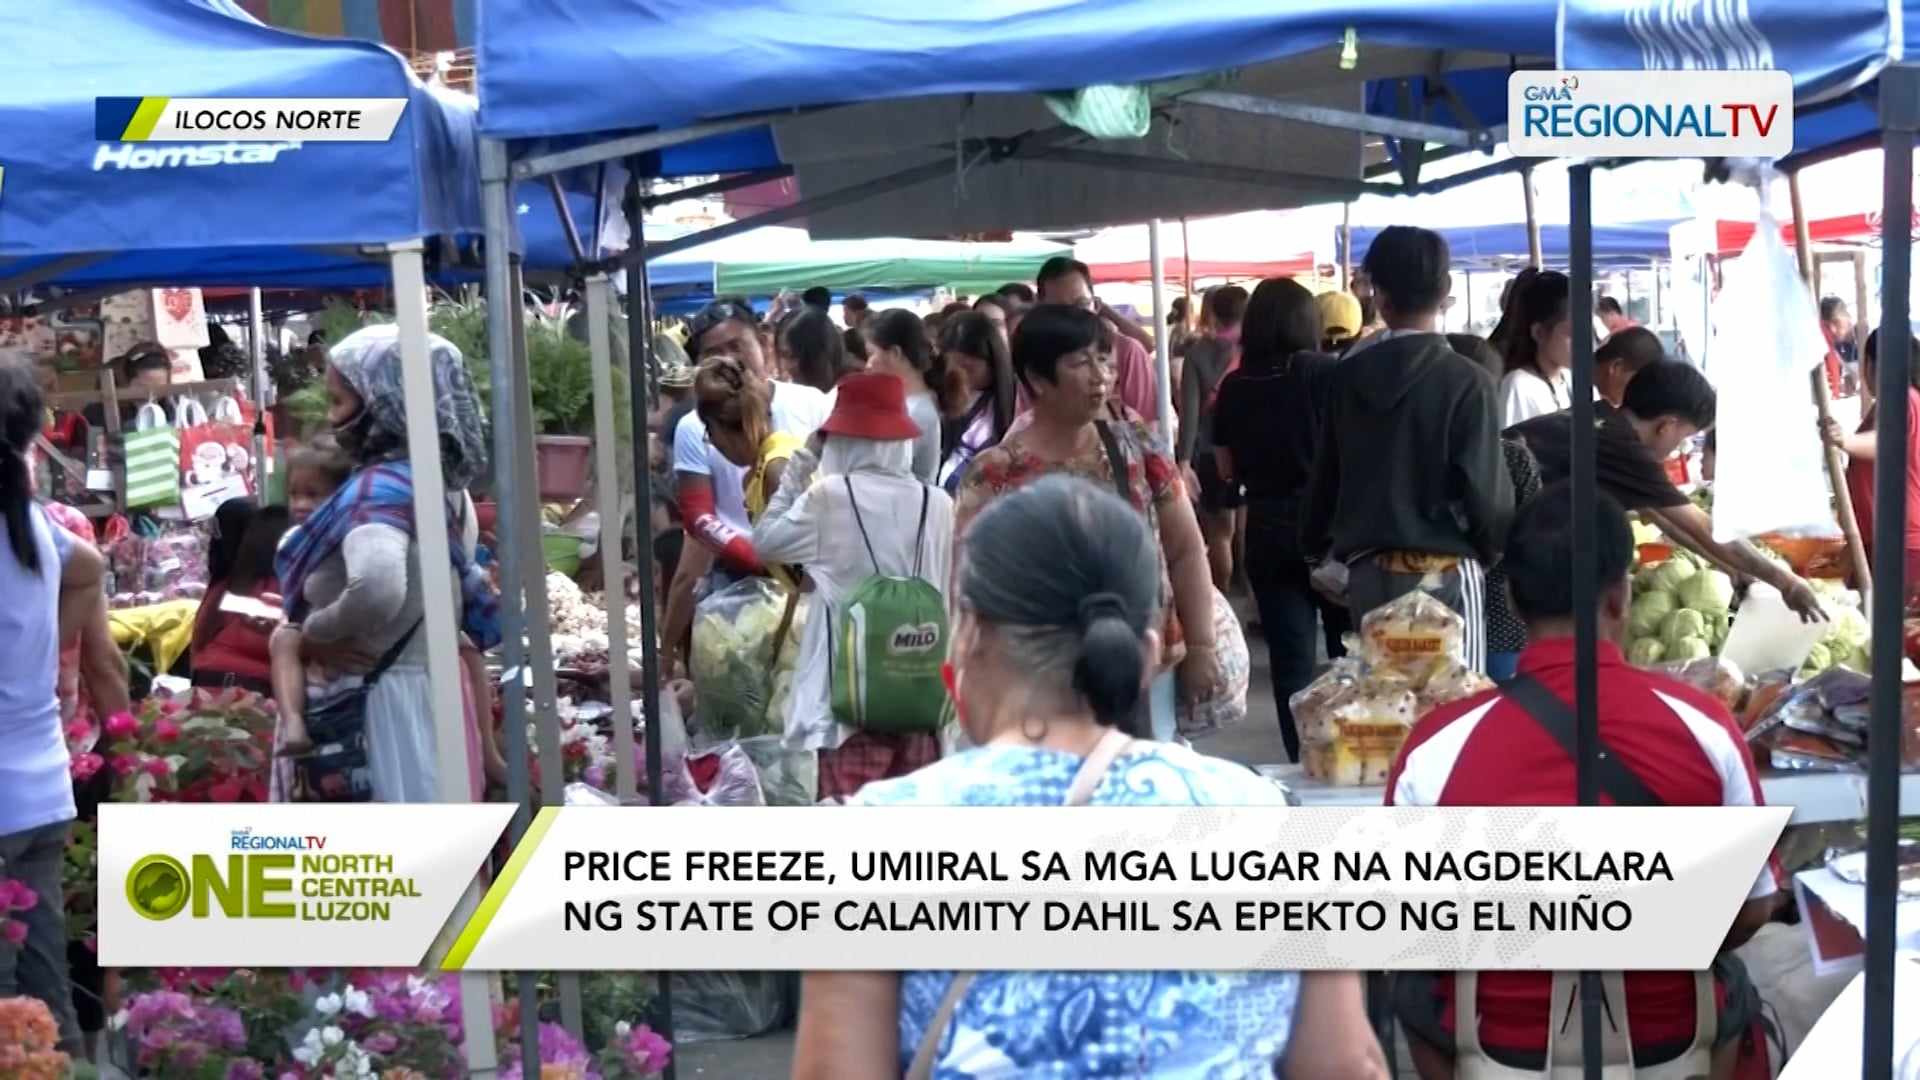 Price freeze, umiiral sa mga lugar na nagdeklara ng state of calamity